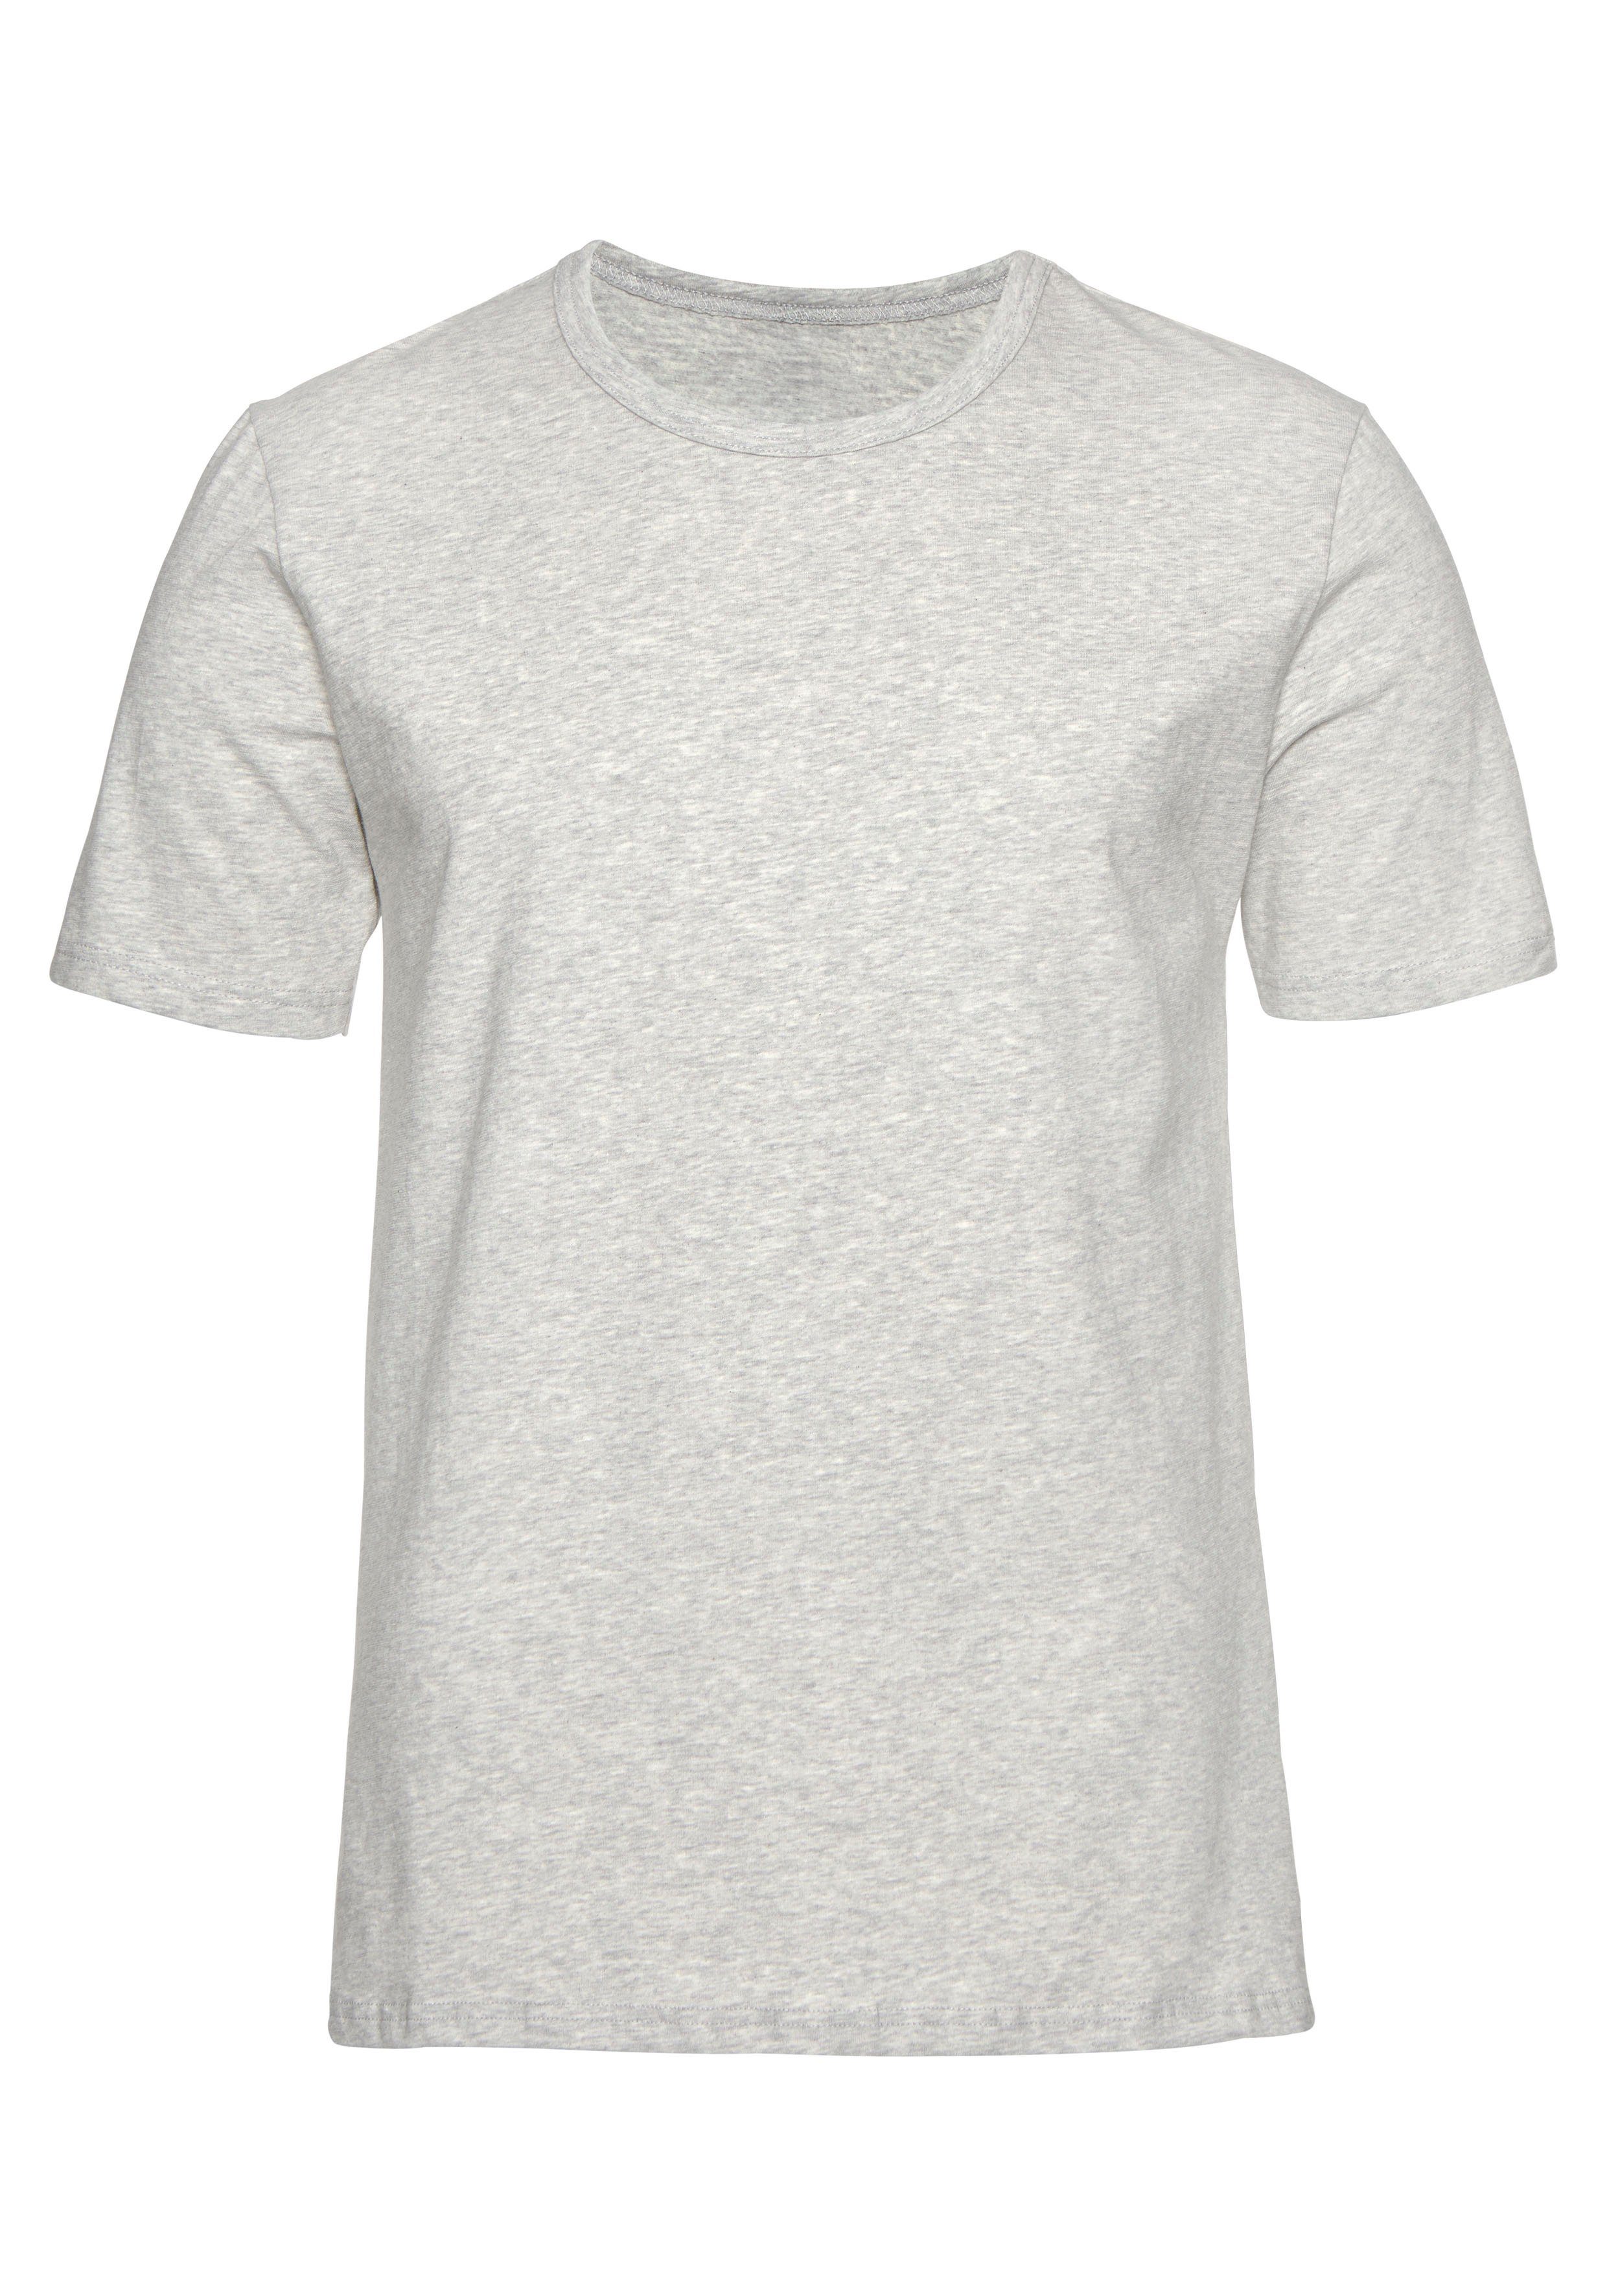 (2er-Pack) Unterziehshirt marine, mit grau-meliert T-Shirt perfekt als H.I.S Rundhalsausschnitt